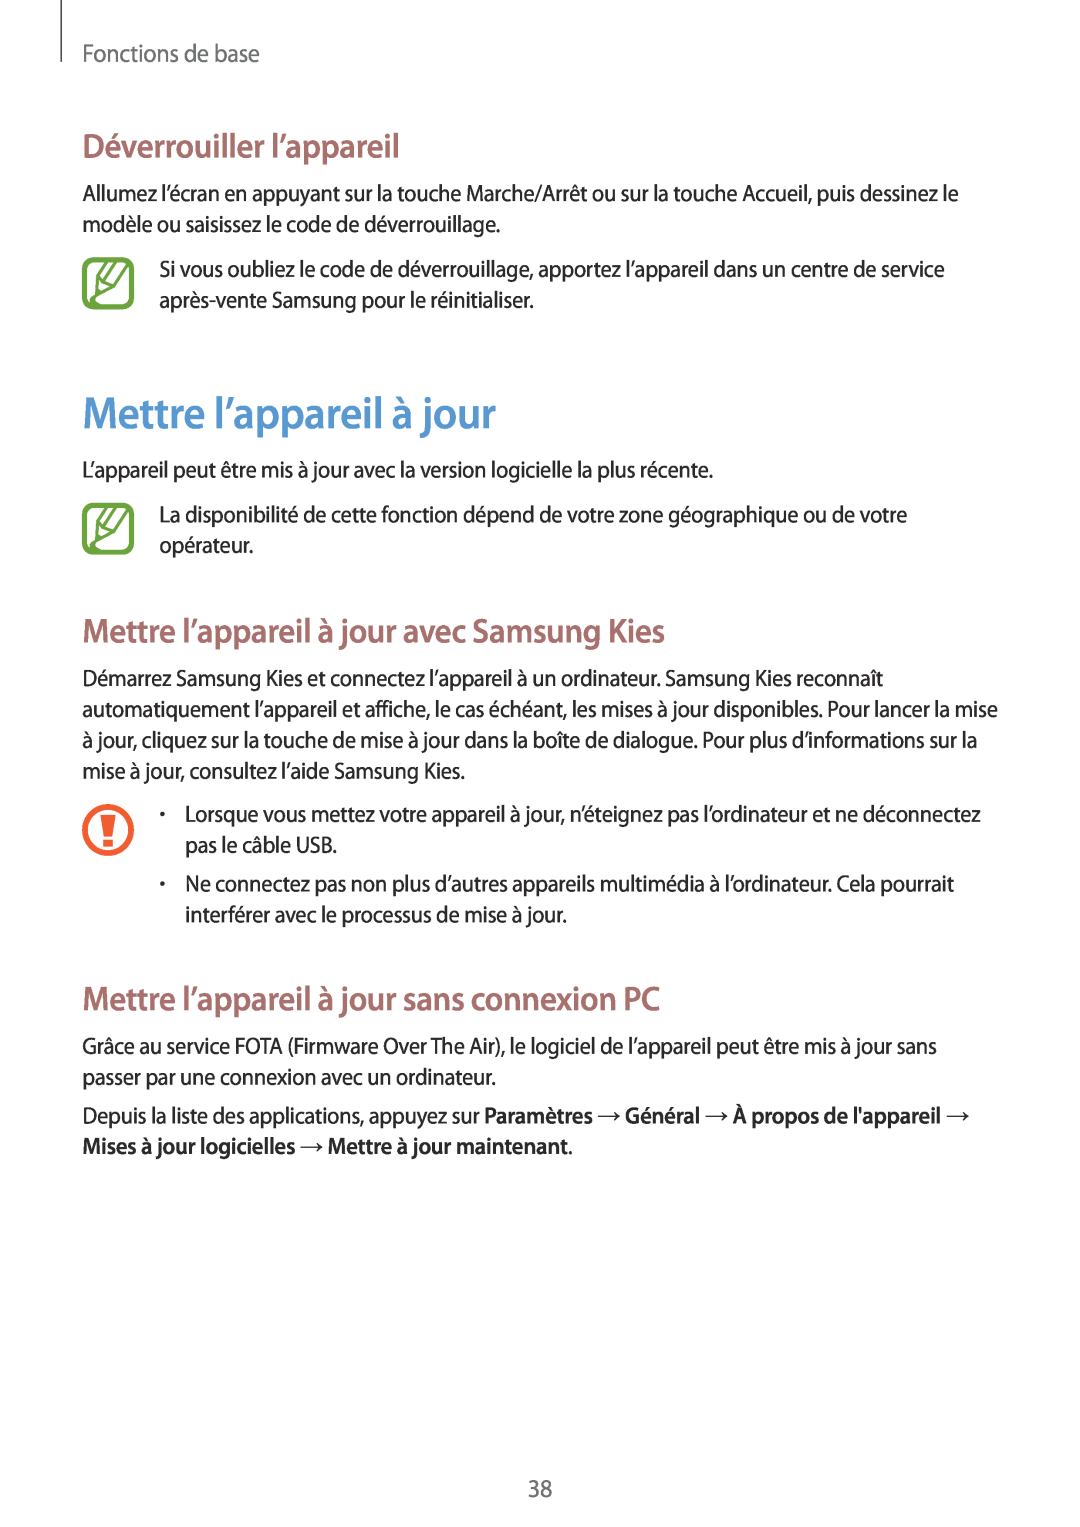 Samsung SM-T533NZWAXEF manual Déverrouiller l’appareil, Mettre l’appareil à jour avec Samsung Kies, Fonctions de base 